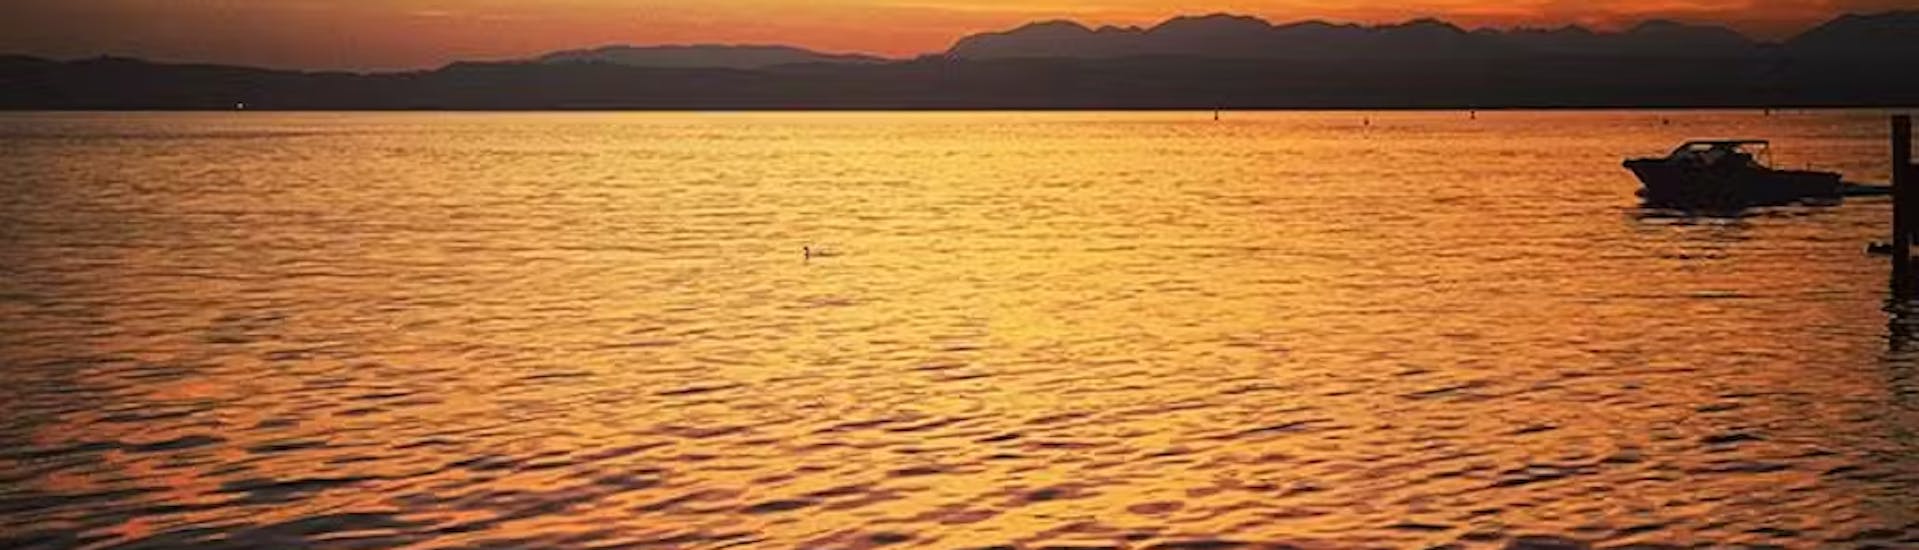 Bootstour bei Sonnenuntergang auf dem Gardasee.